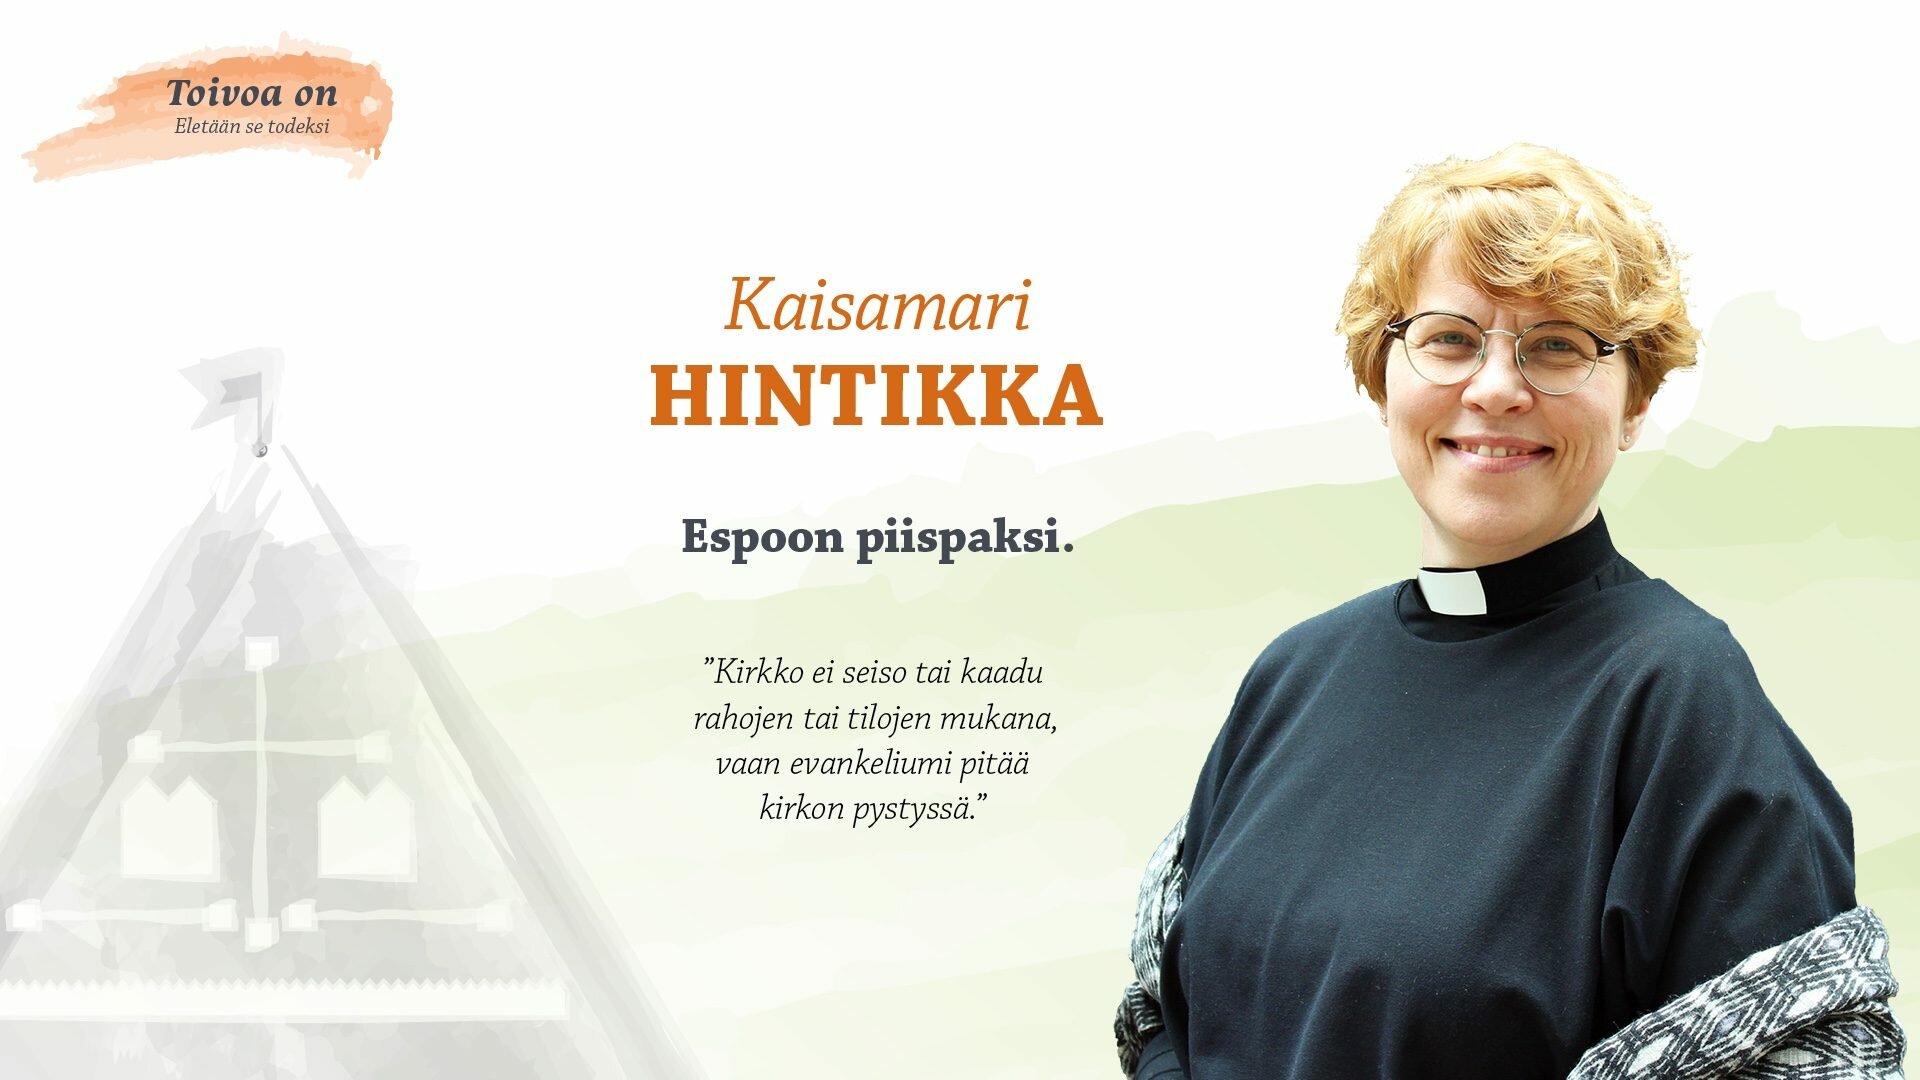 Kaisamari Hintikka Espoon piispaksi